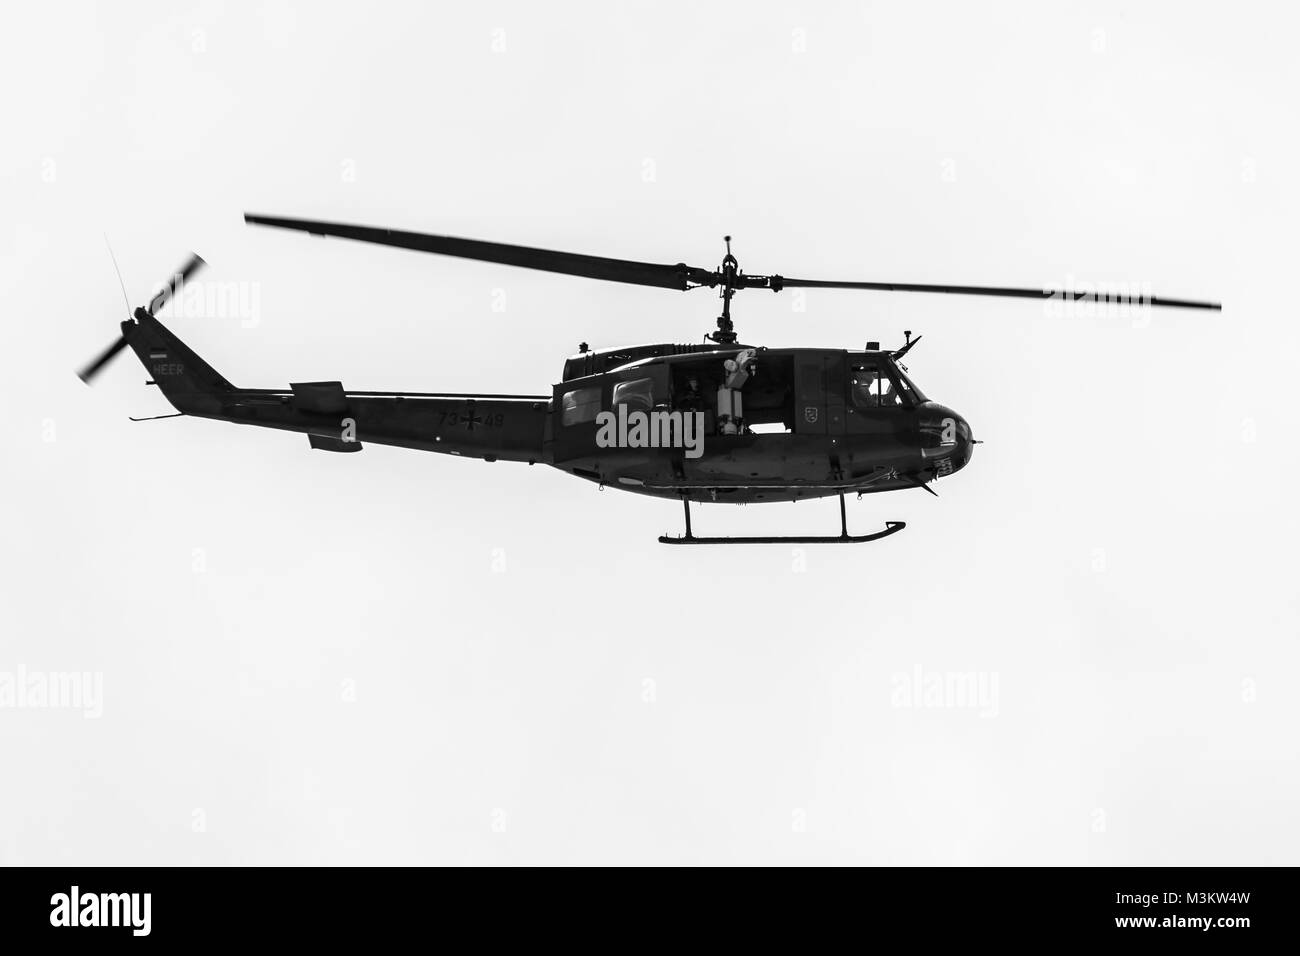 Berlino, Germania - 02 giugno 2016: dimostrazione di volo di militare elicottero Bell UH-1 Iroquois. Esercito Tedesco. In bianco e nero. Mostra ILA Berlin Air Show 2016 Foto Stock